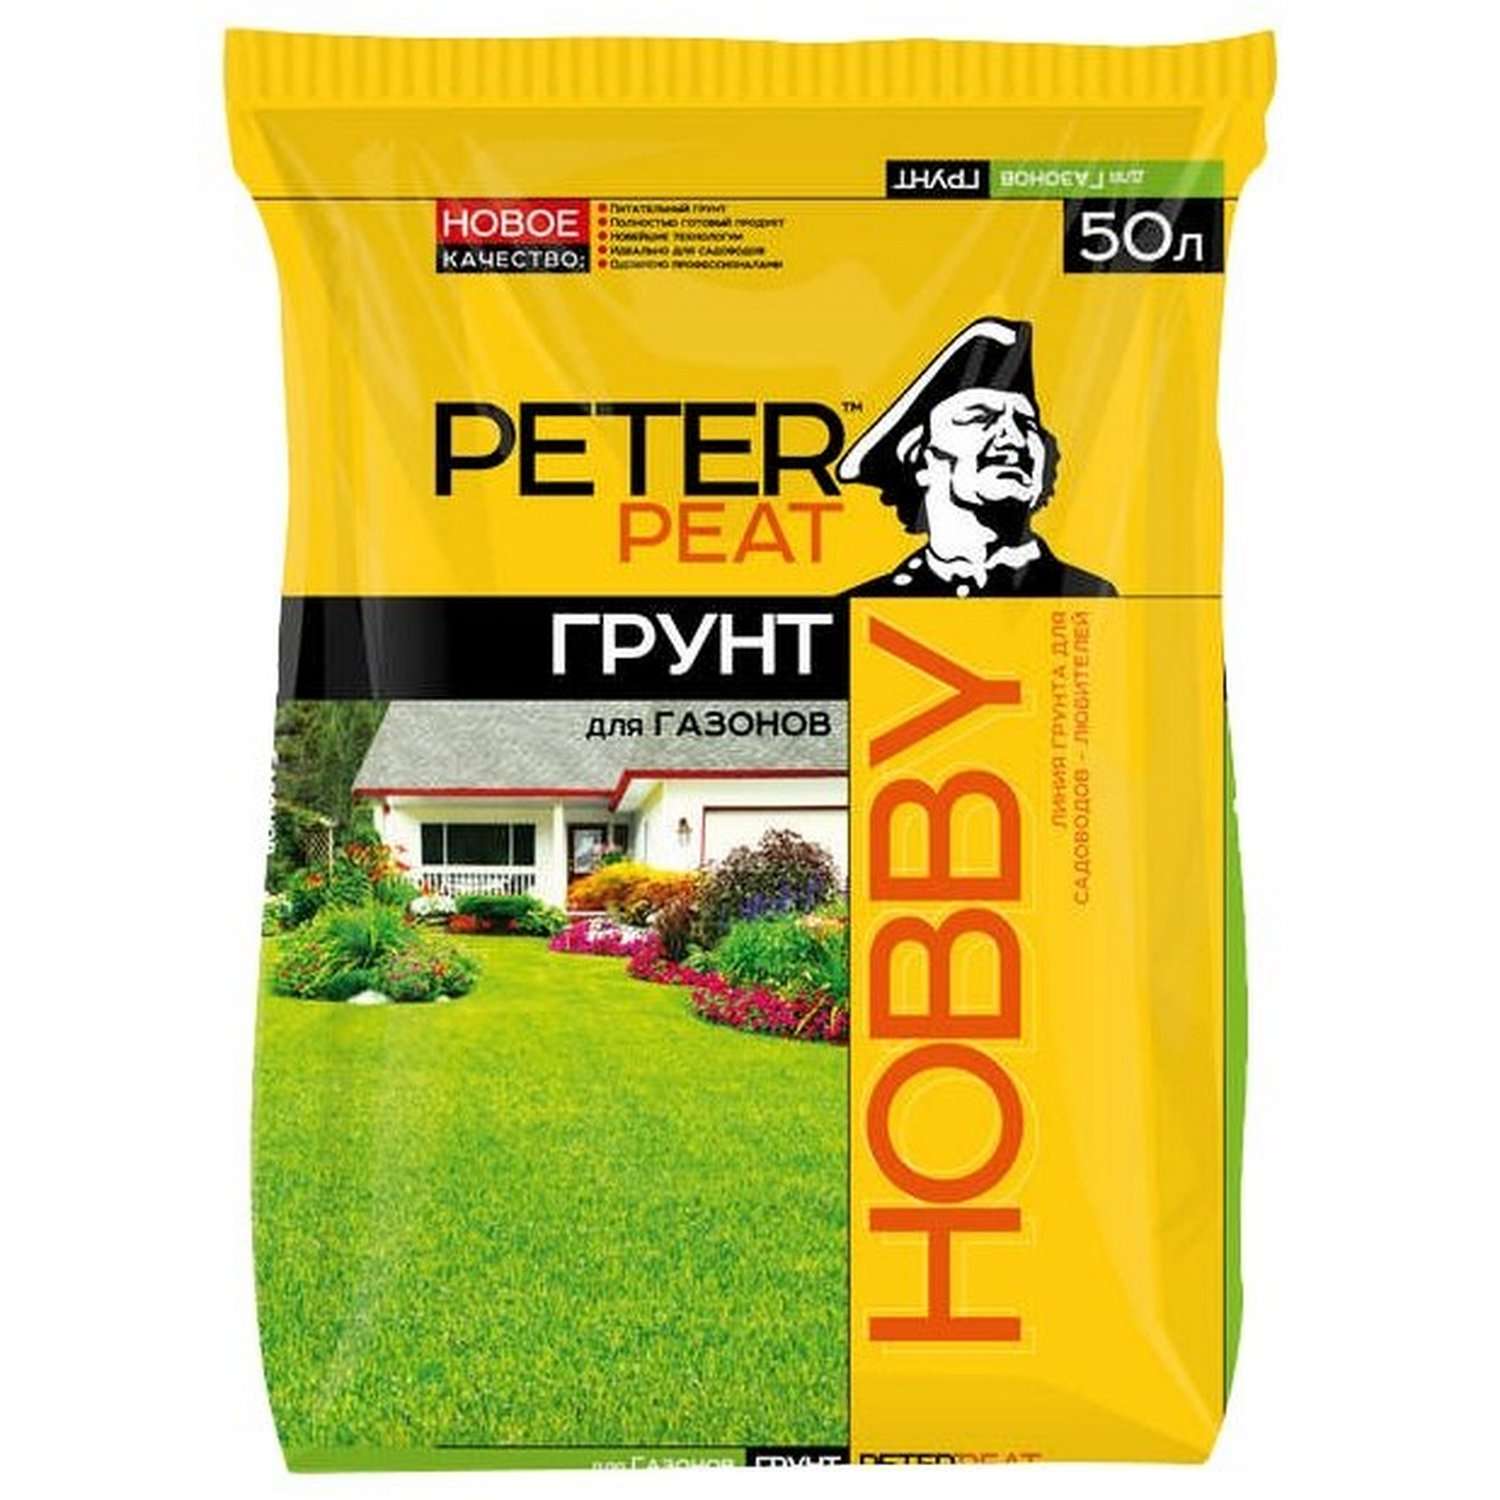 Грунт PETER PEAT Для газонов линия Хобби 50л - фото 1